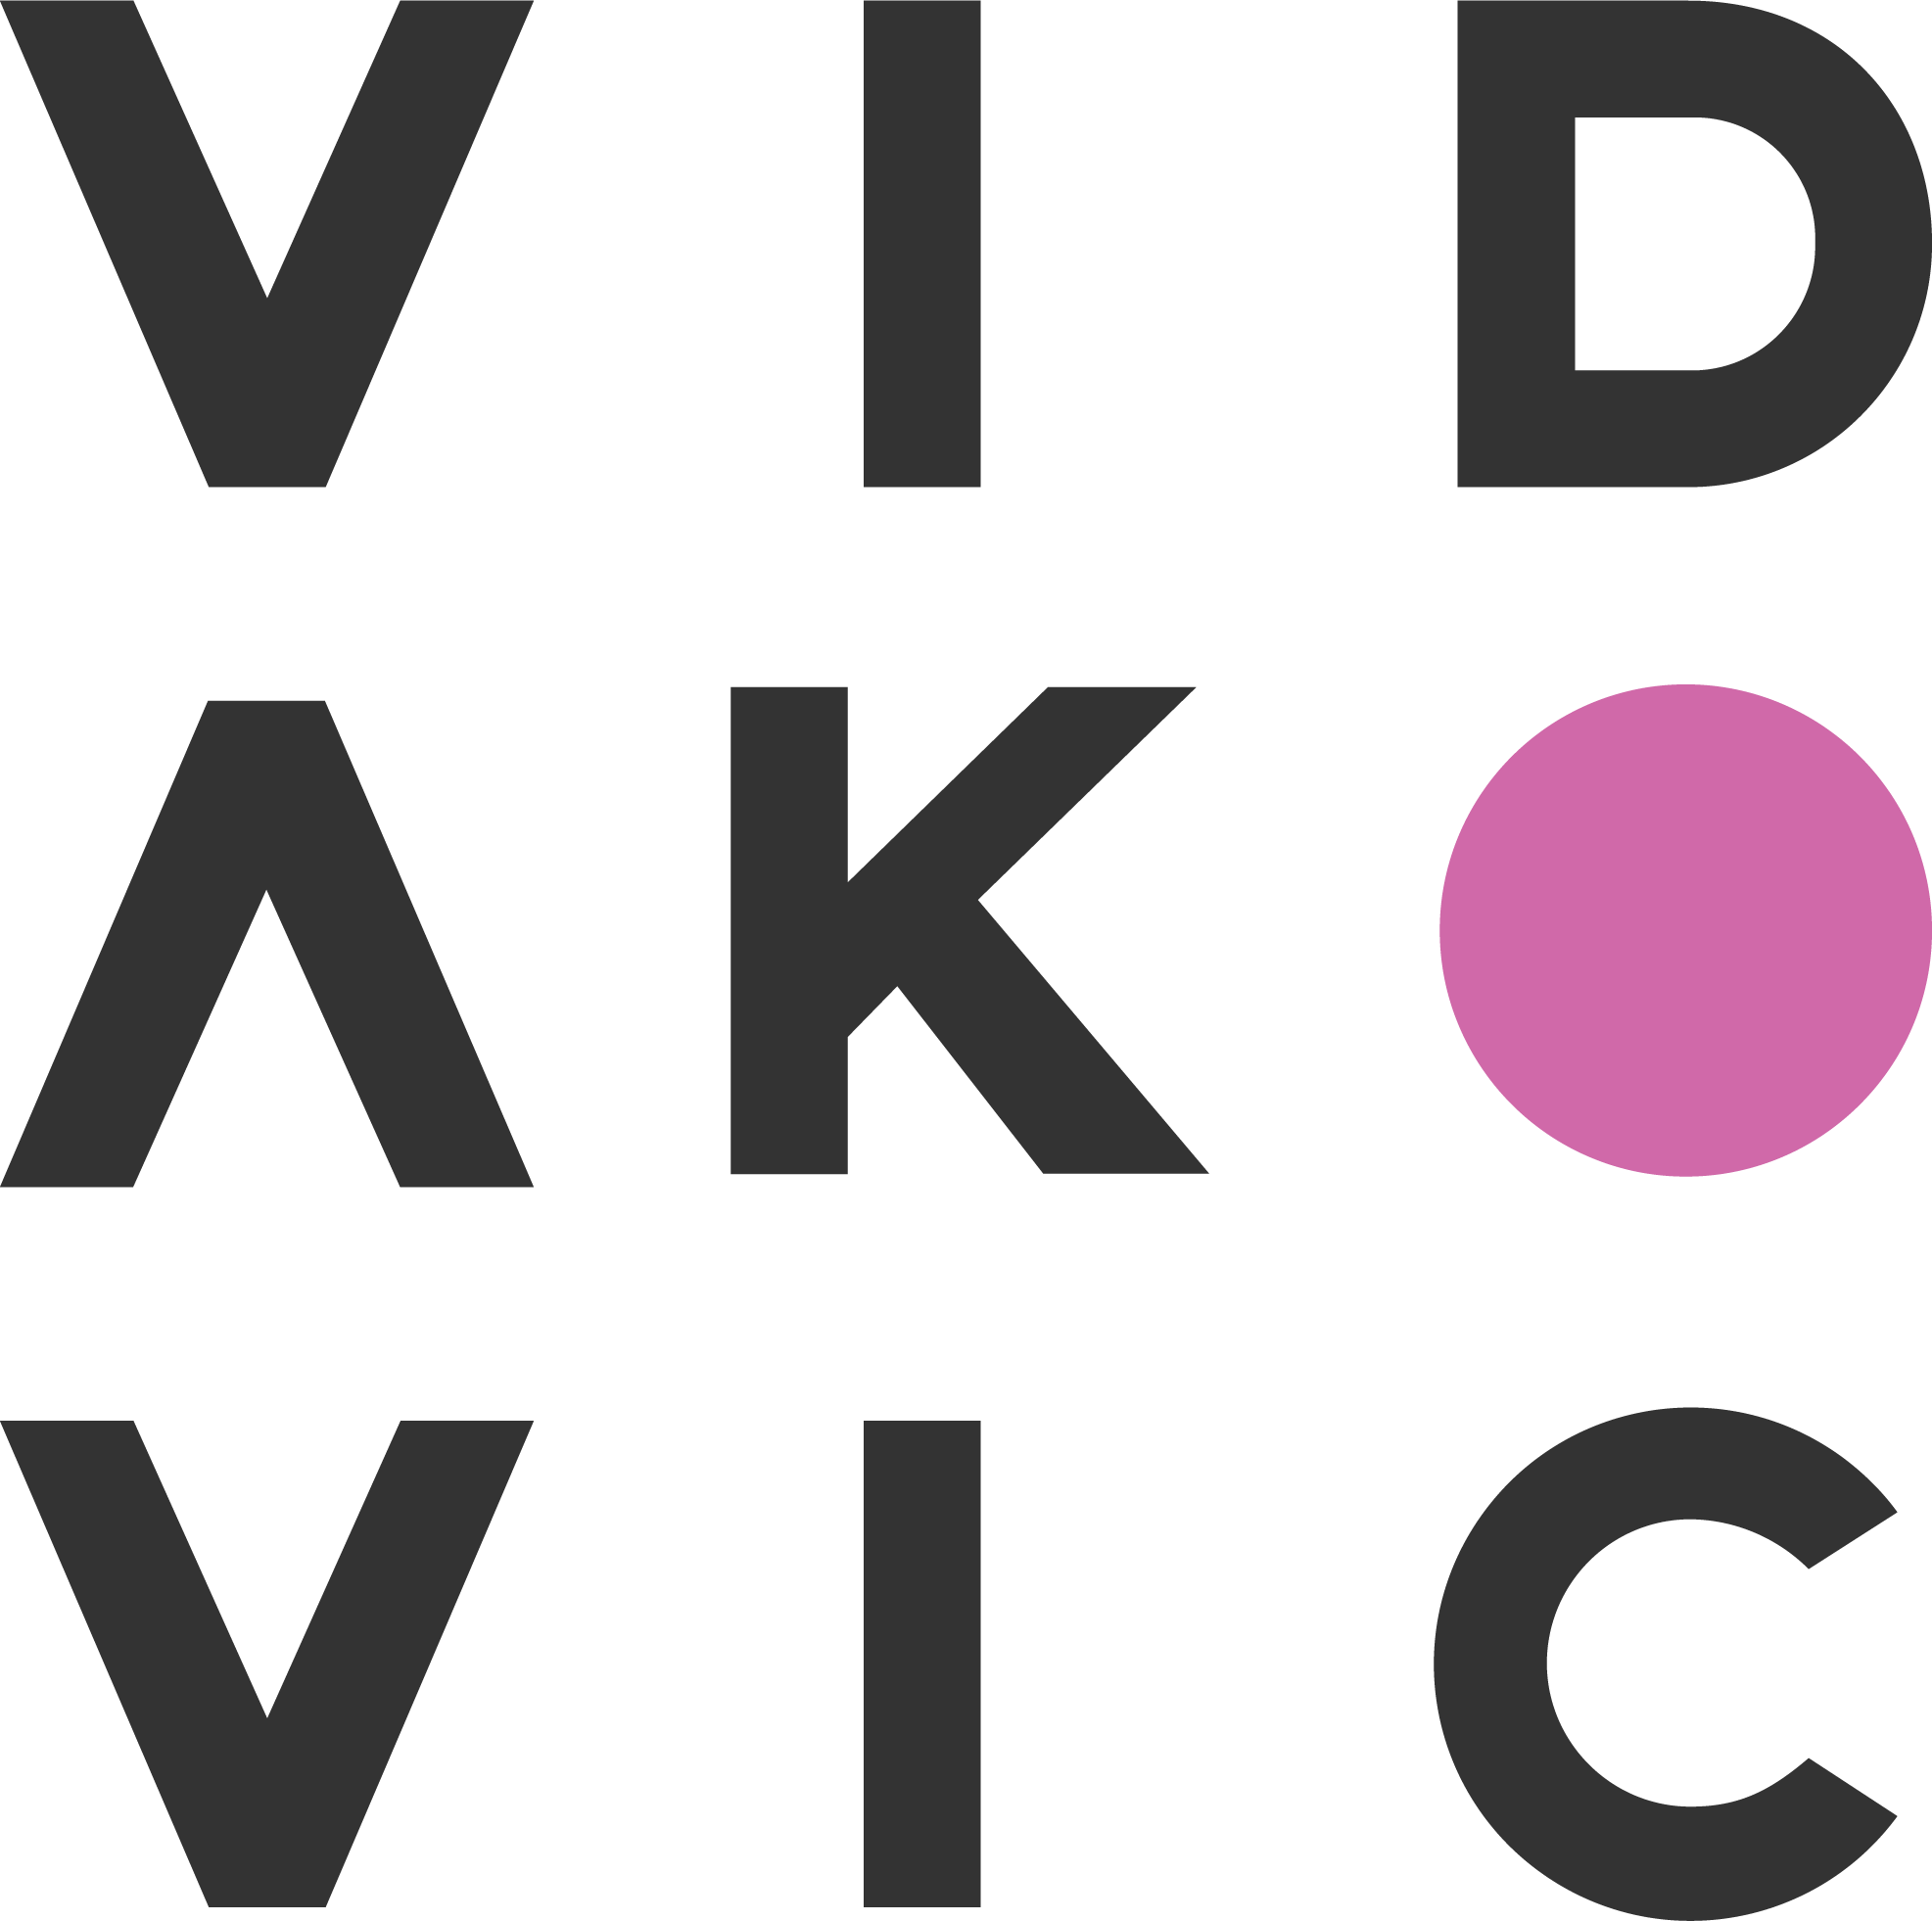 Vladan Vidakovic